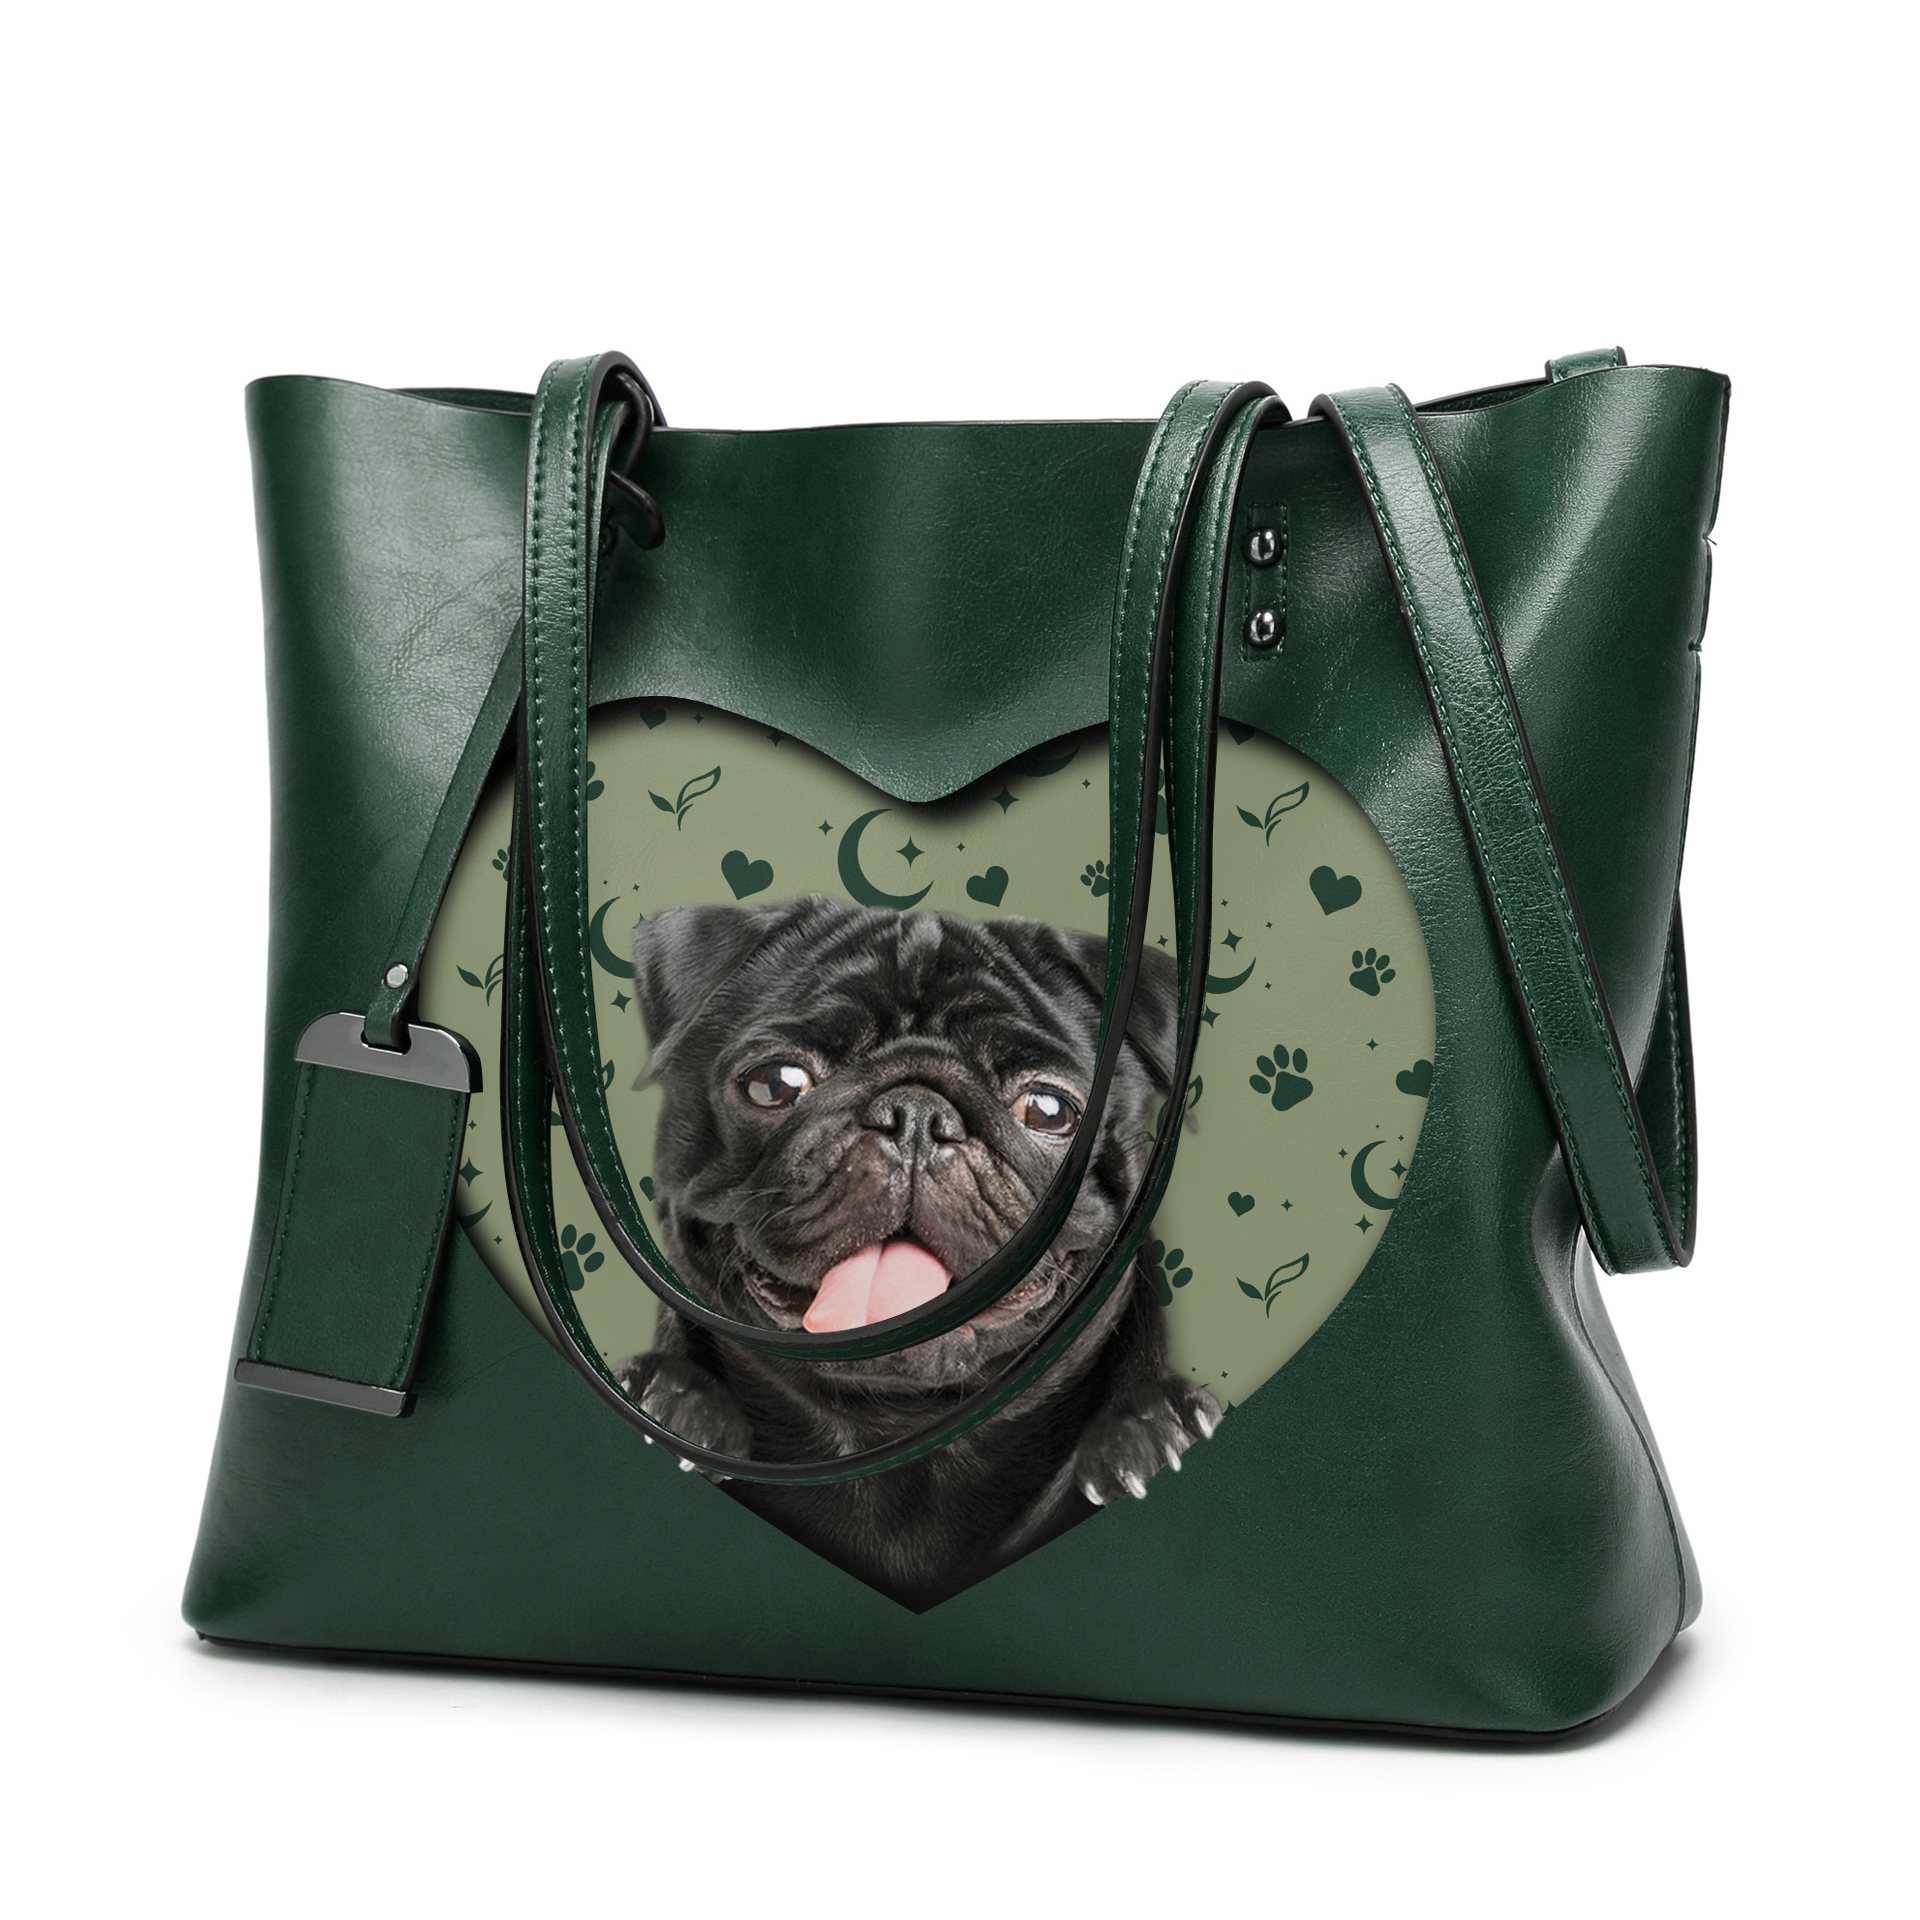 I Know I'm Cute - Pug Glamour Handbag V2 - 10